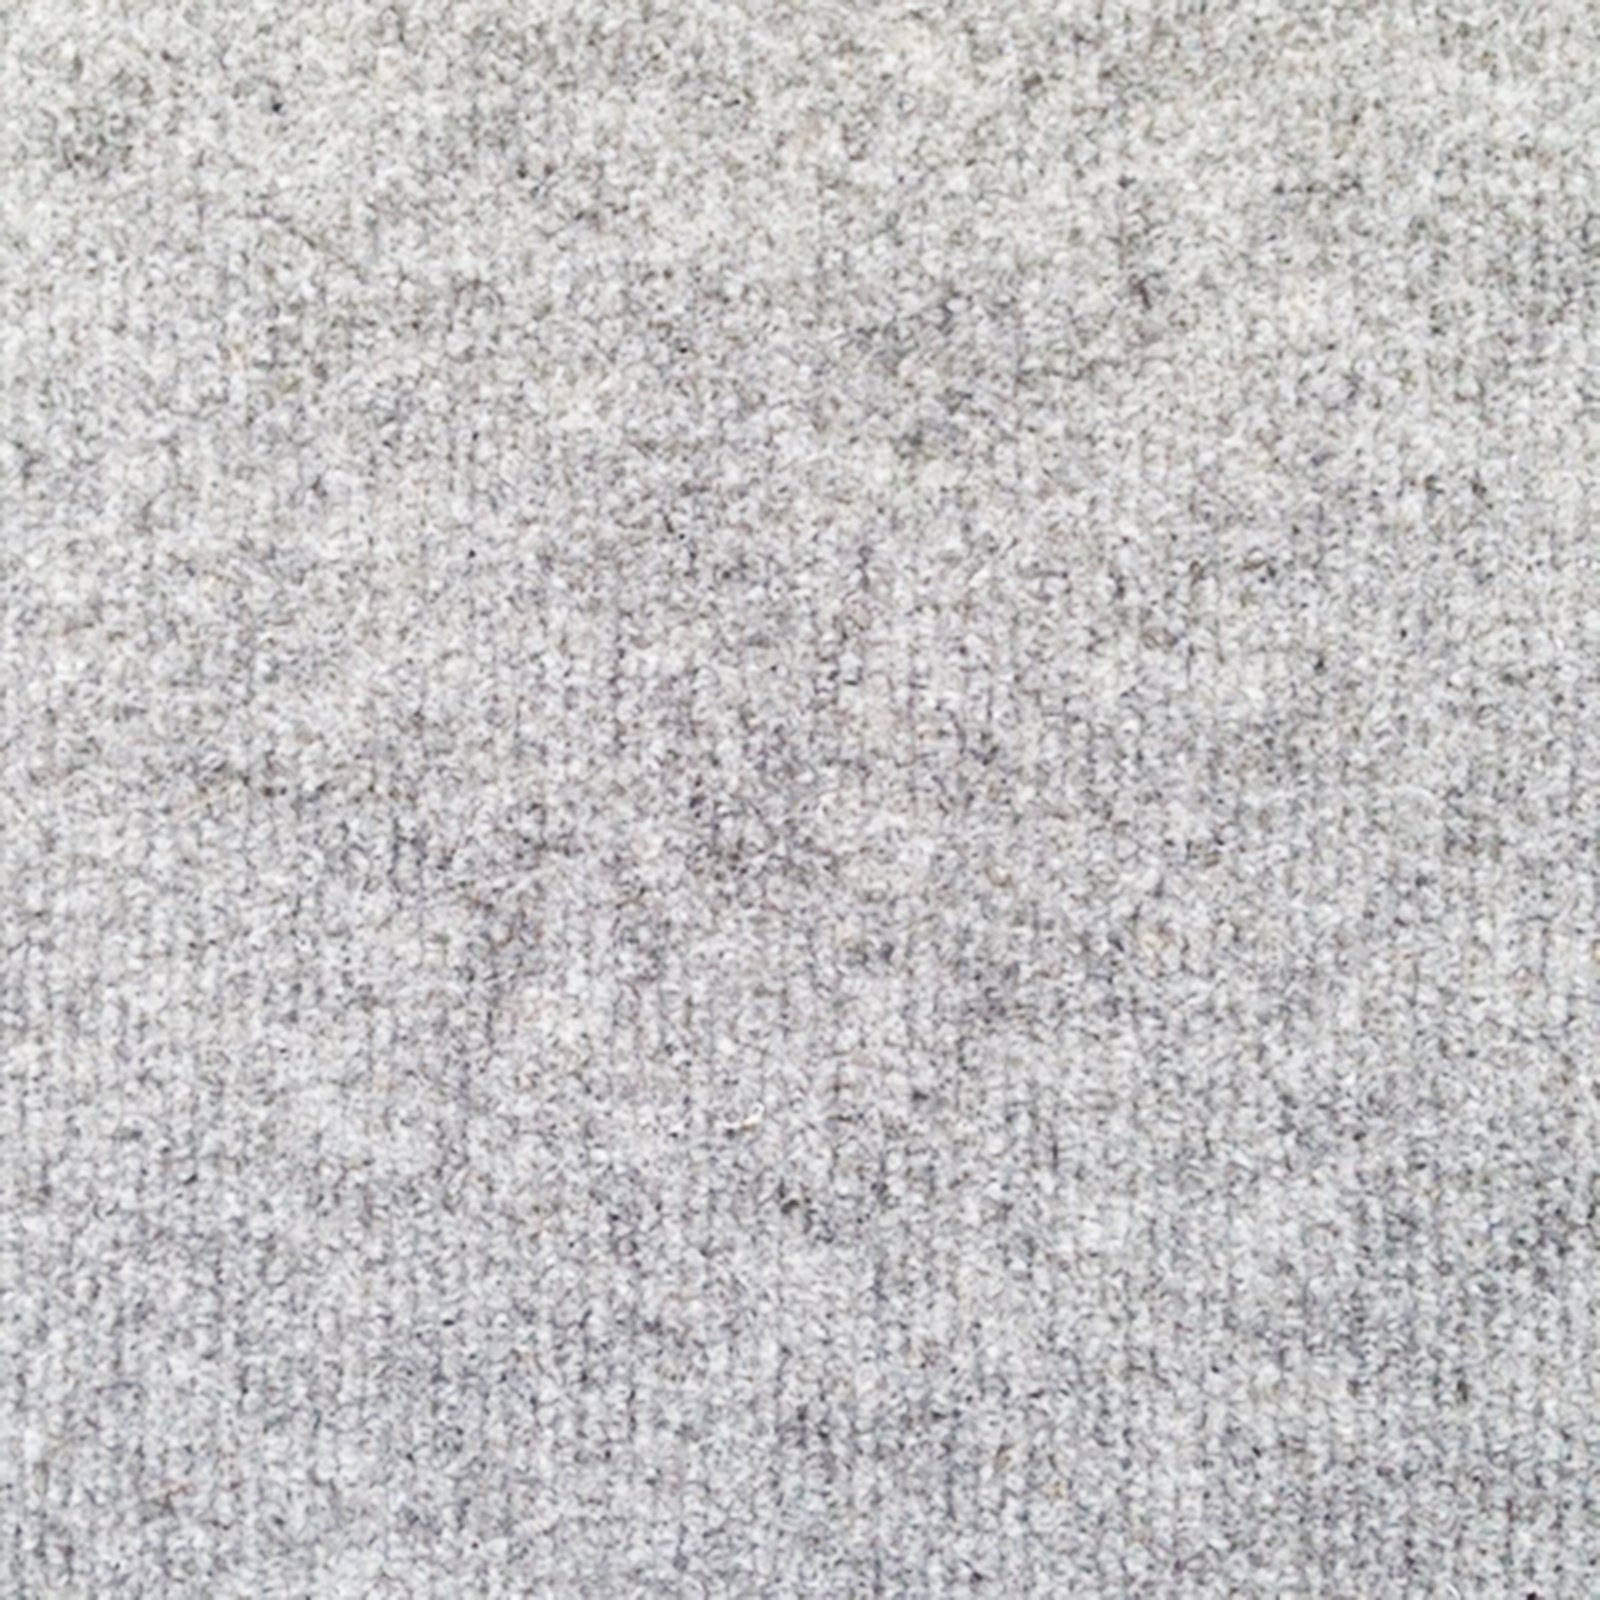 Teppichboden - grau - 2 Meter breit